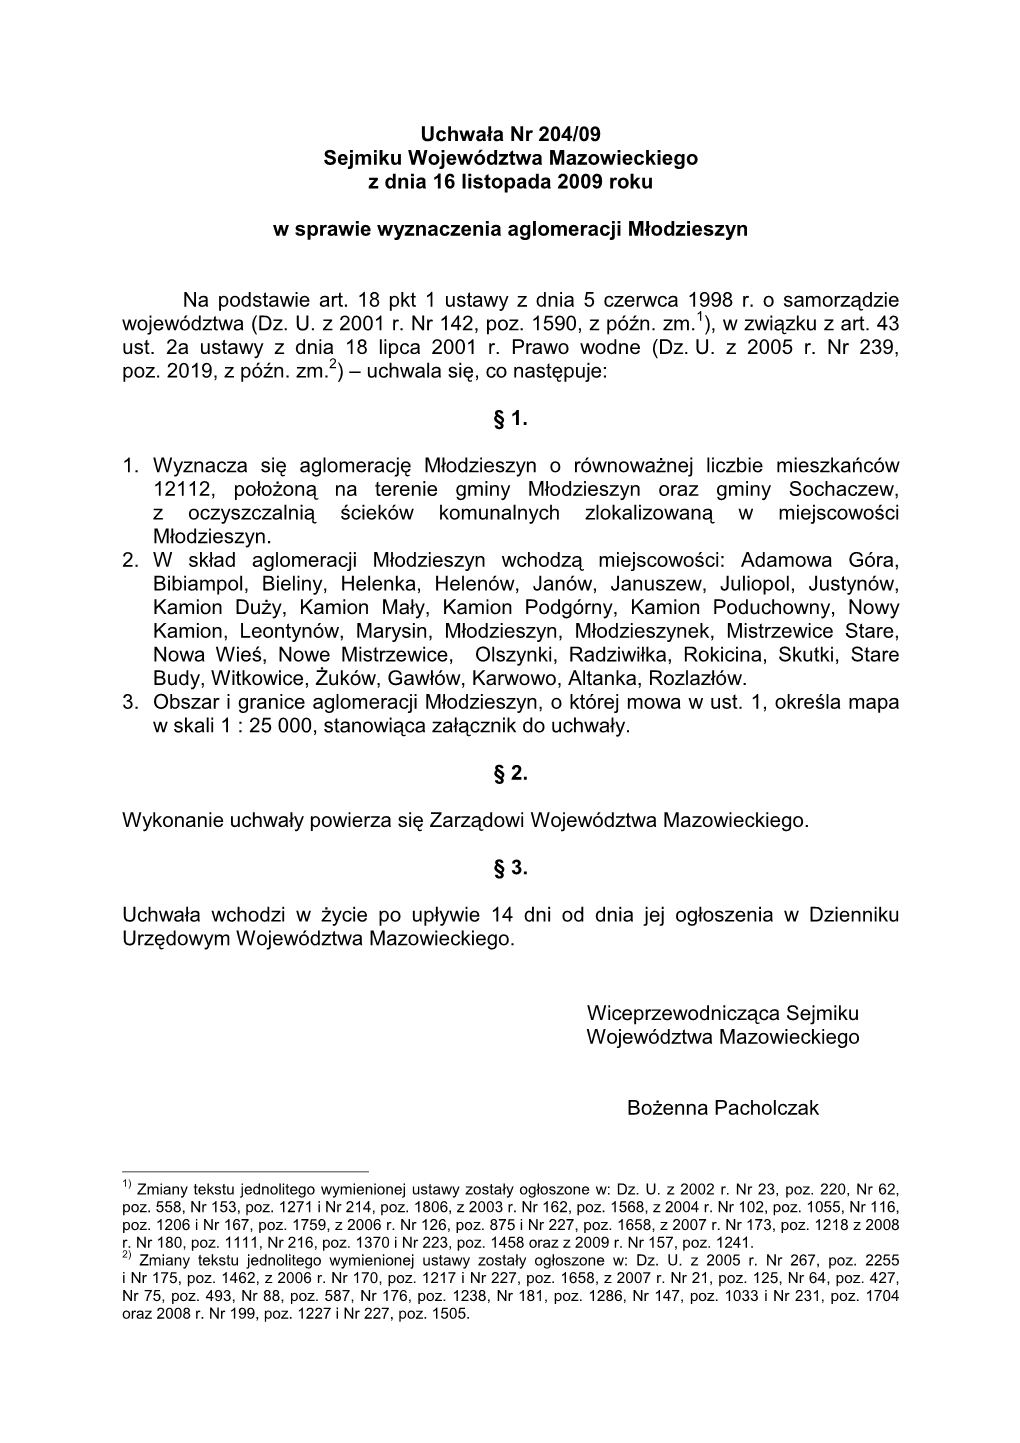 Uchwała Nr 204/09 Sejmiku Województwa Mazowieckiego Z Dnia 16 Listopada 2009 Roku